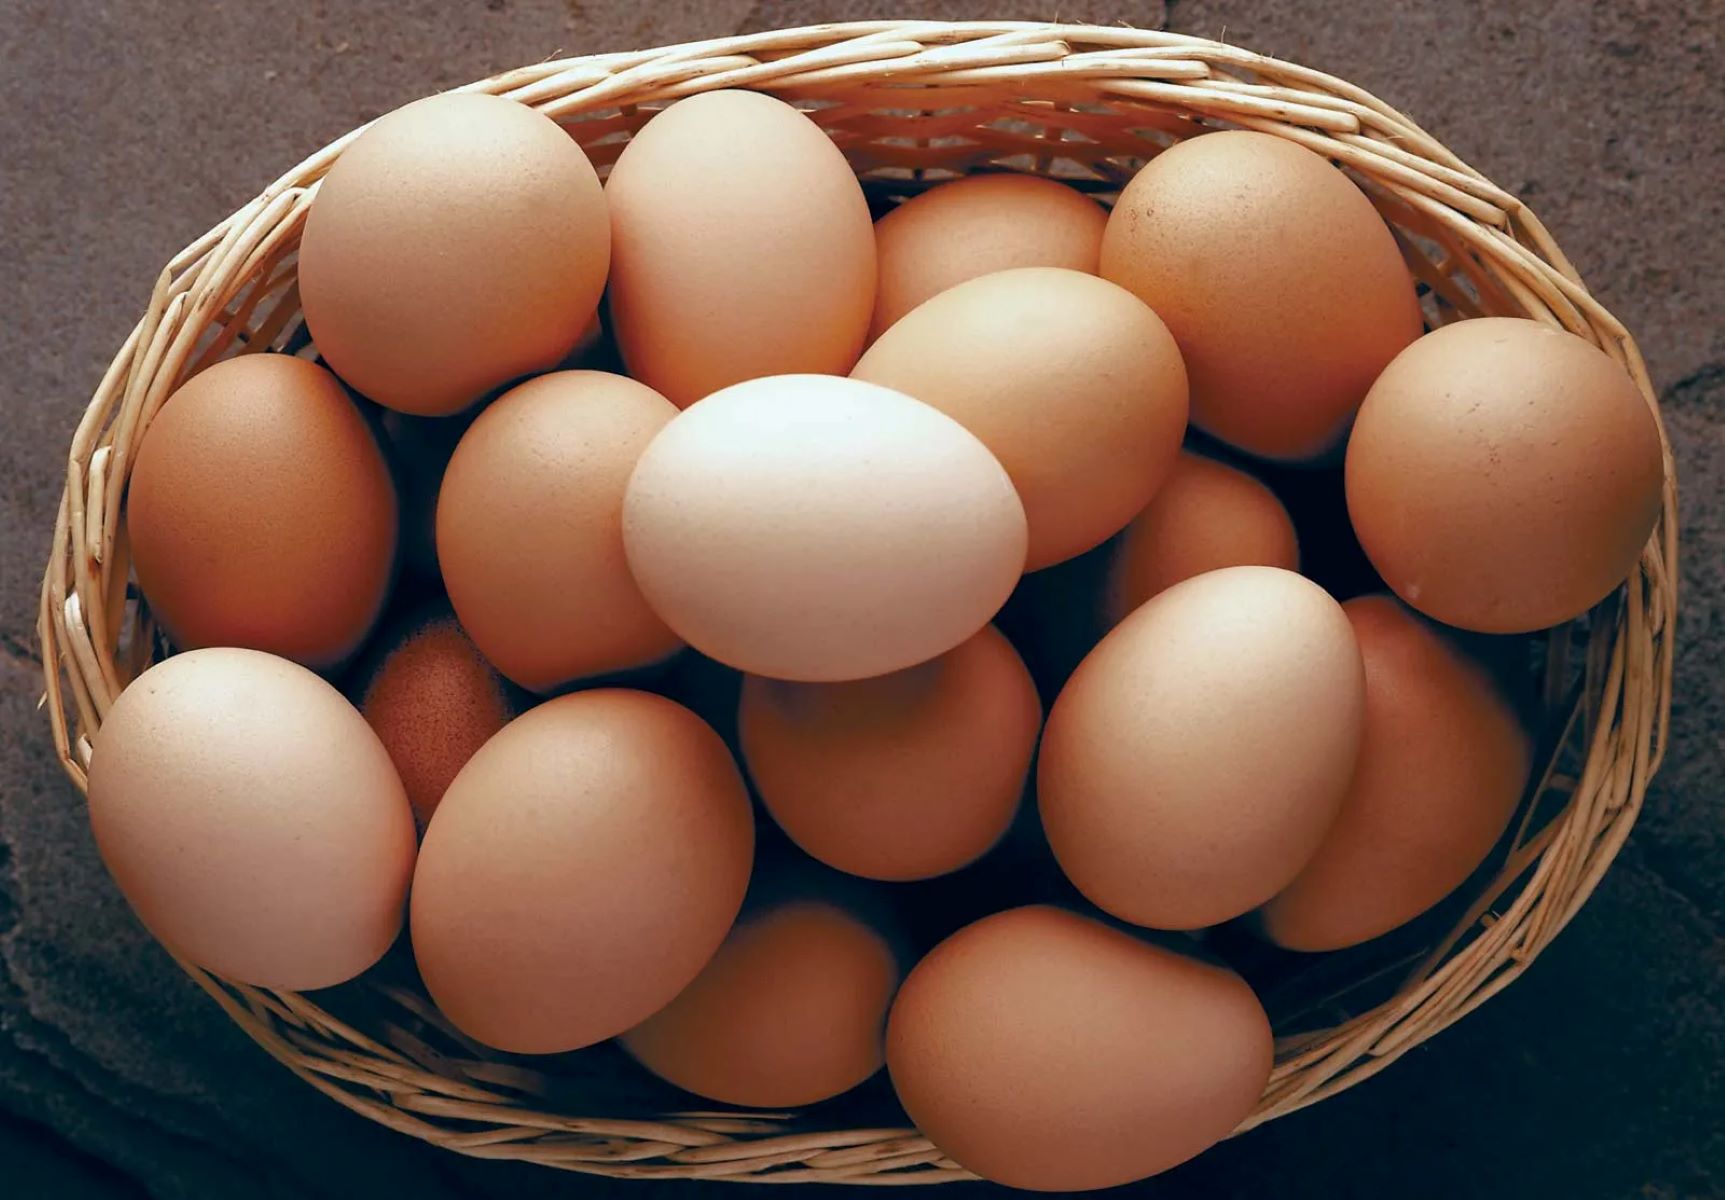 The Surprising Origin Of The Phrase “Suck Eggs”